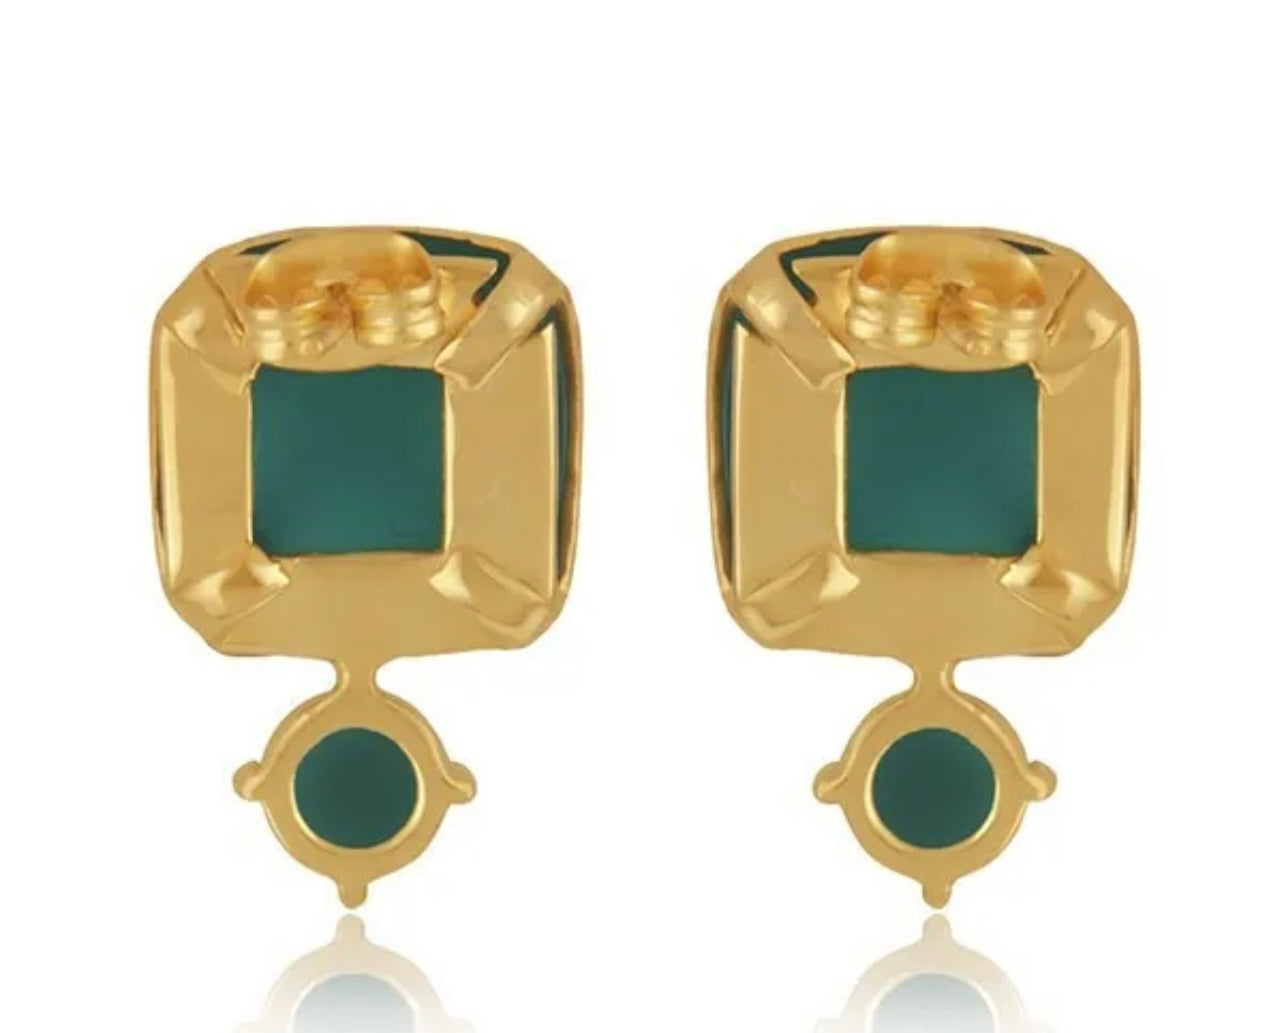 Criss Cross Green Onyx Gemstone Gold Stud Earrings 1”